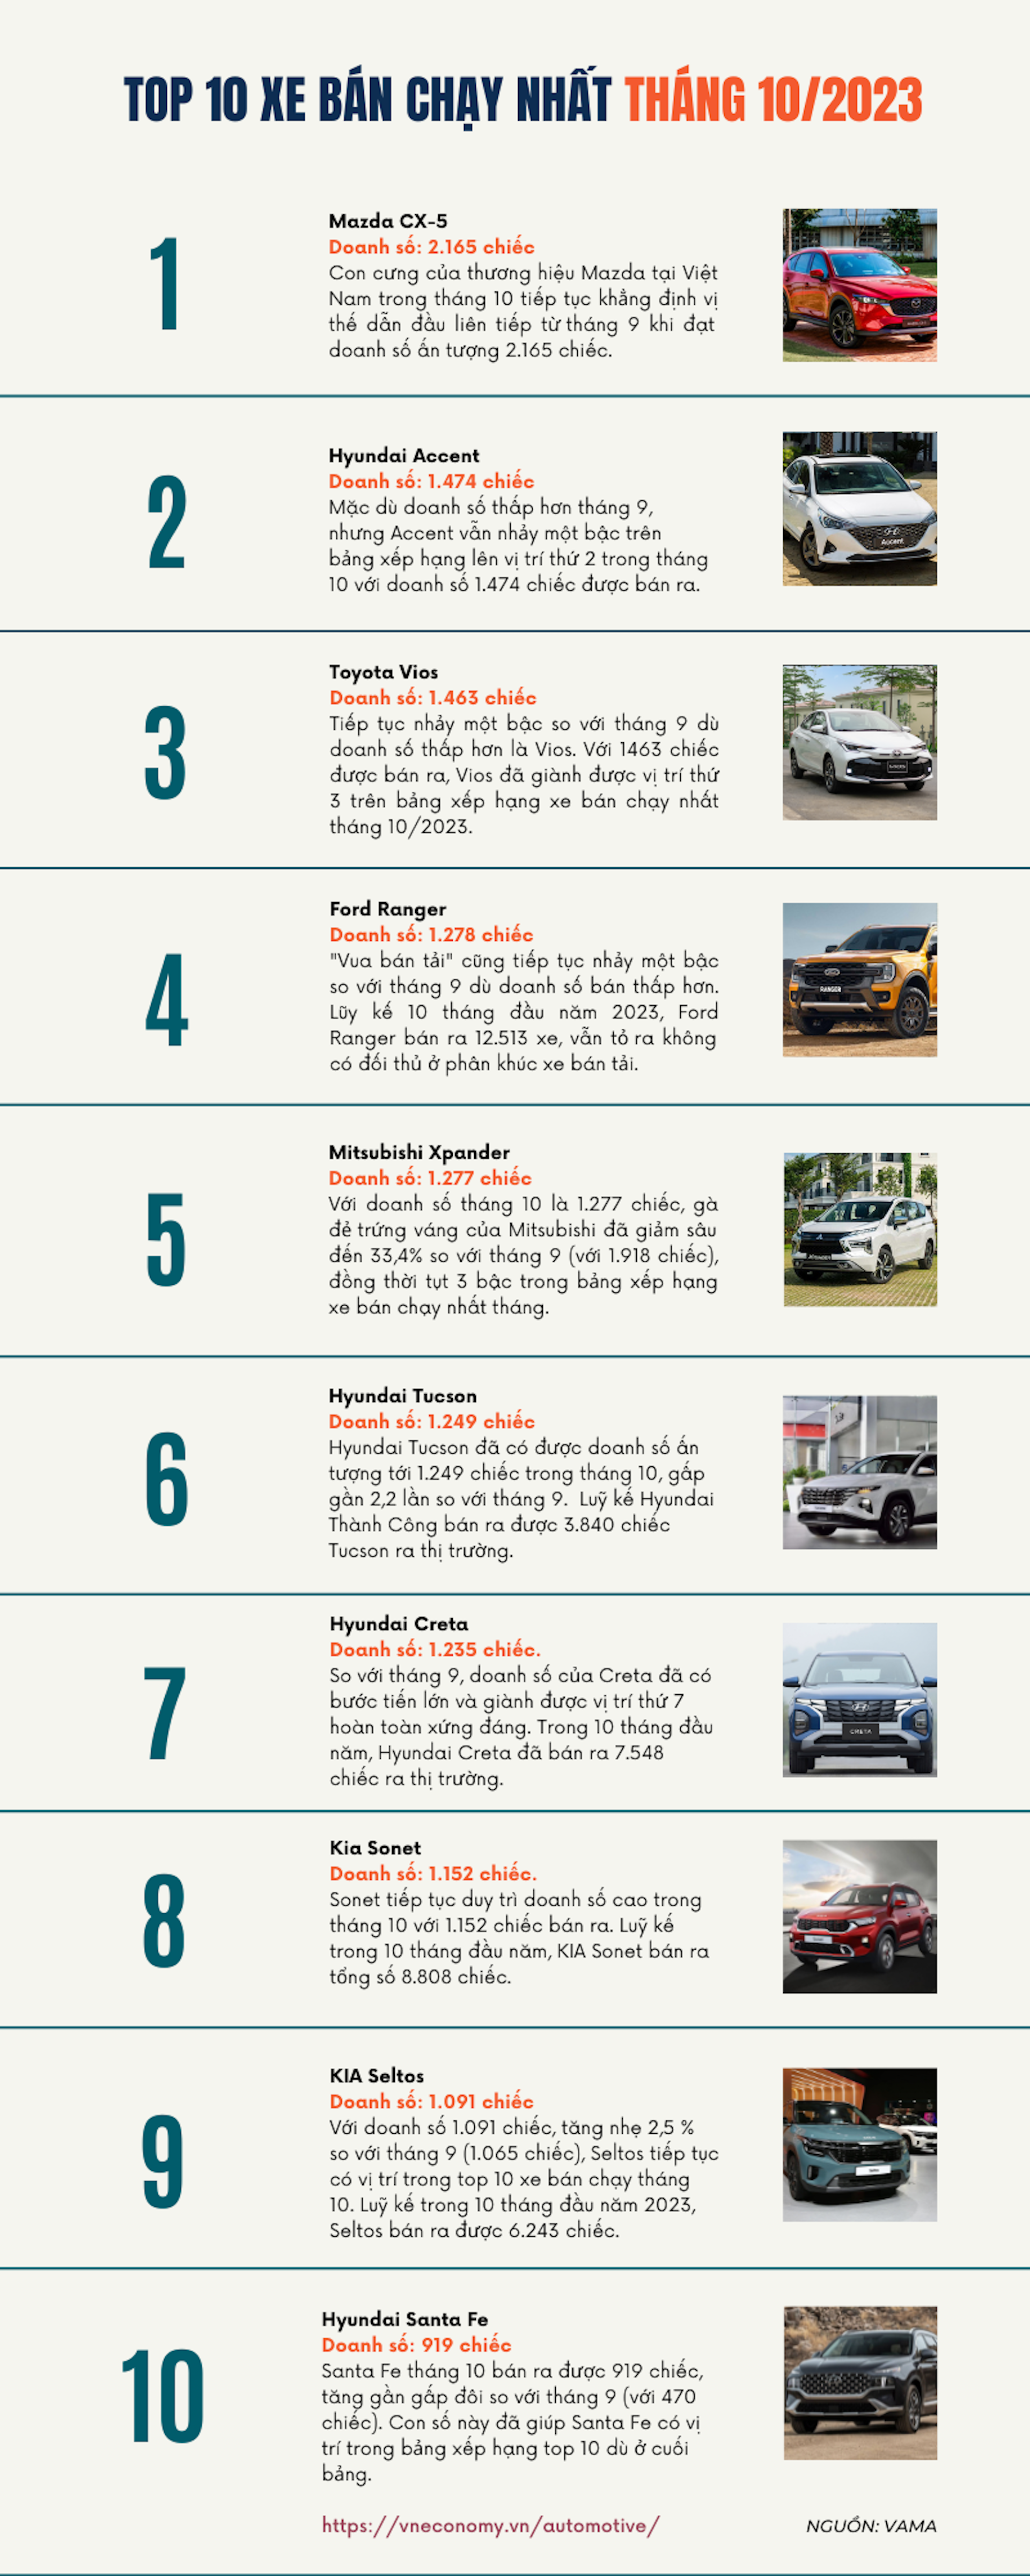 Top 10 xe bán chạy nhất tháng 10/2023 - Ảnh 1